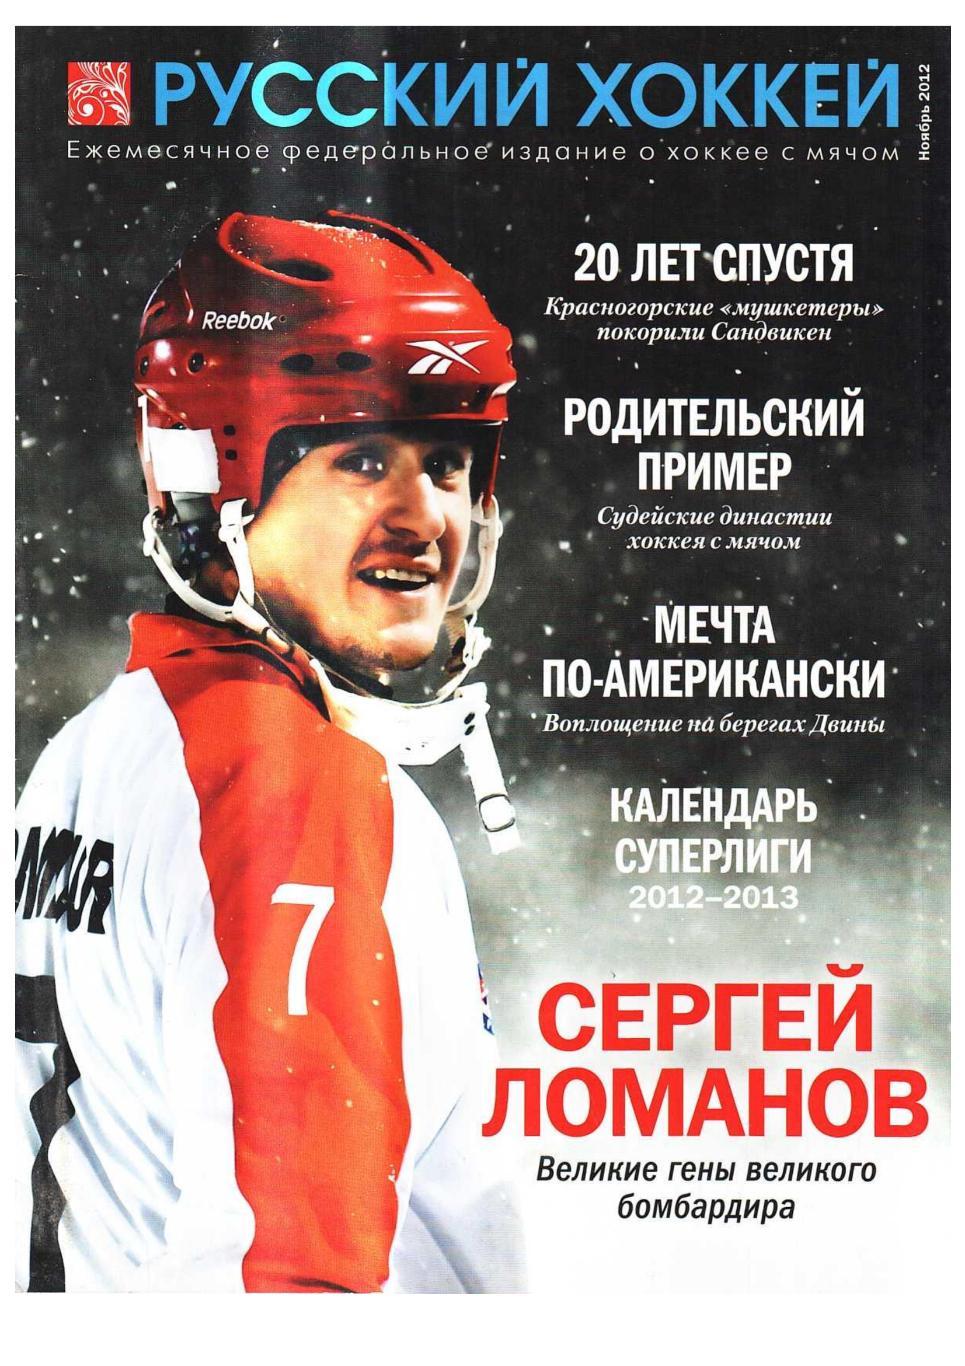 Русский хоккей. Ноябрь 2012. Ежемесячное федеральное издание о хоккее с мячом.